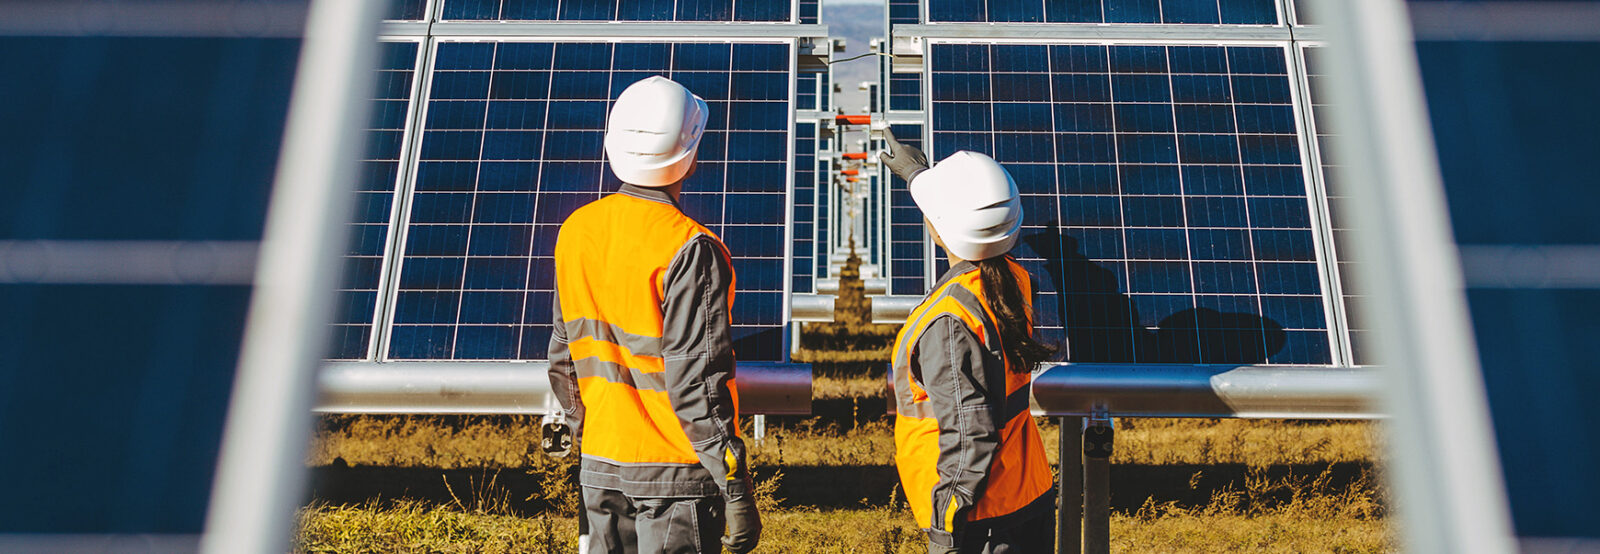 Das Bild zeigt eine Frau und einen Mann mit Arbeitskleidung von hinten in einem Solarpark stehend. Beide schauen in Richtung der Anlage, auf die die Frau deutet.